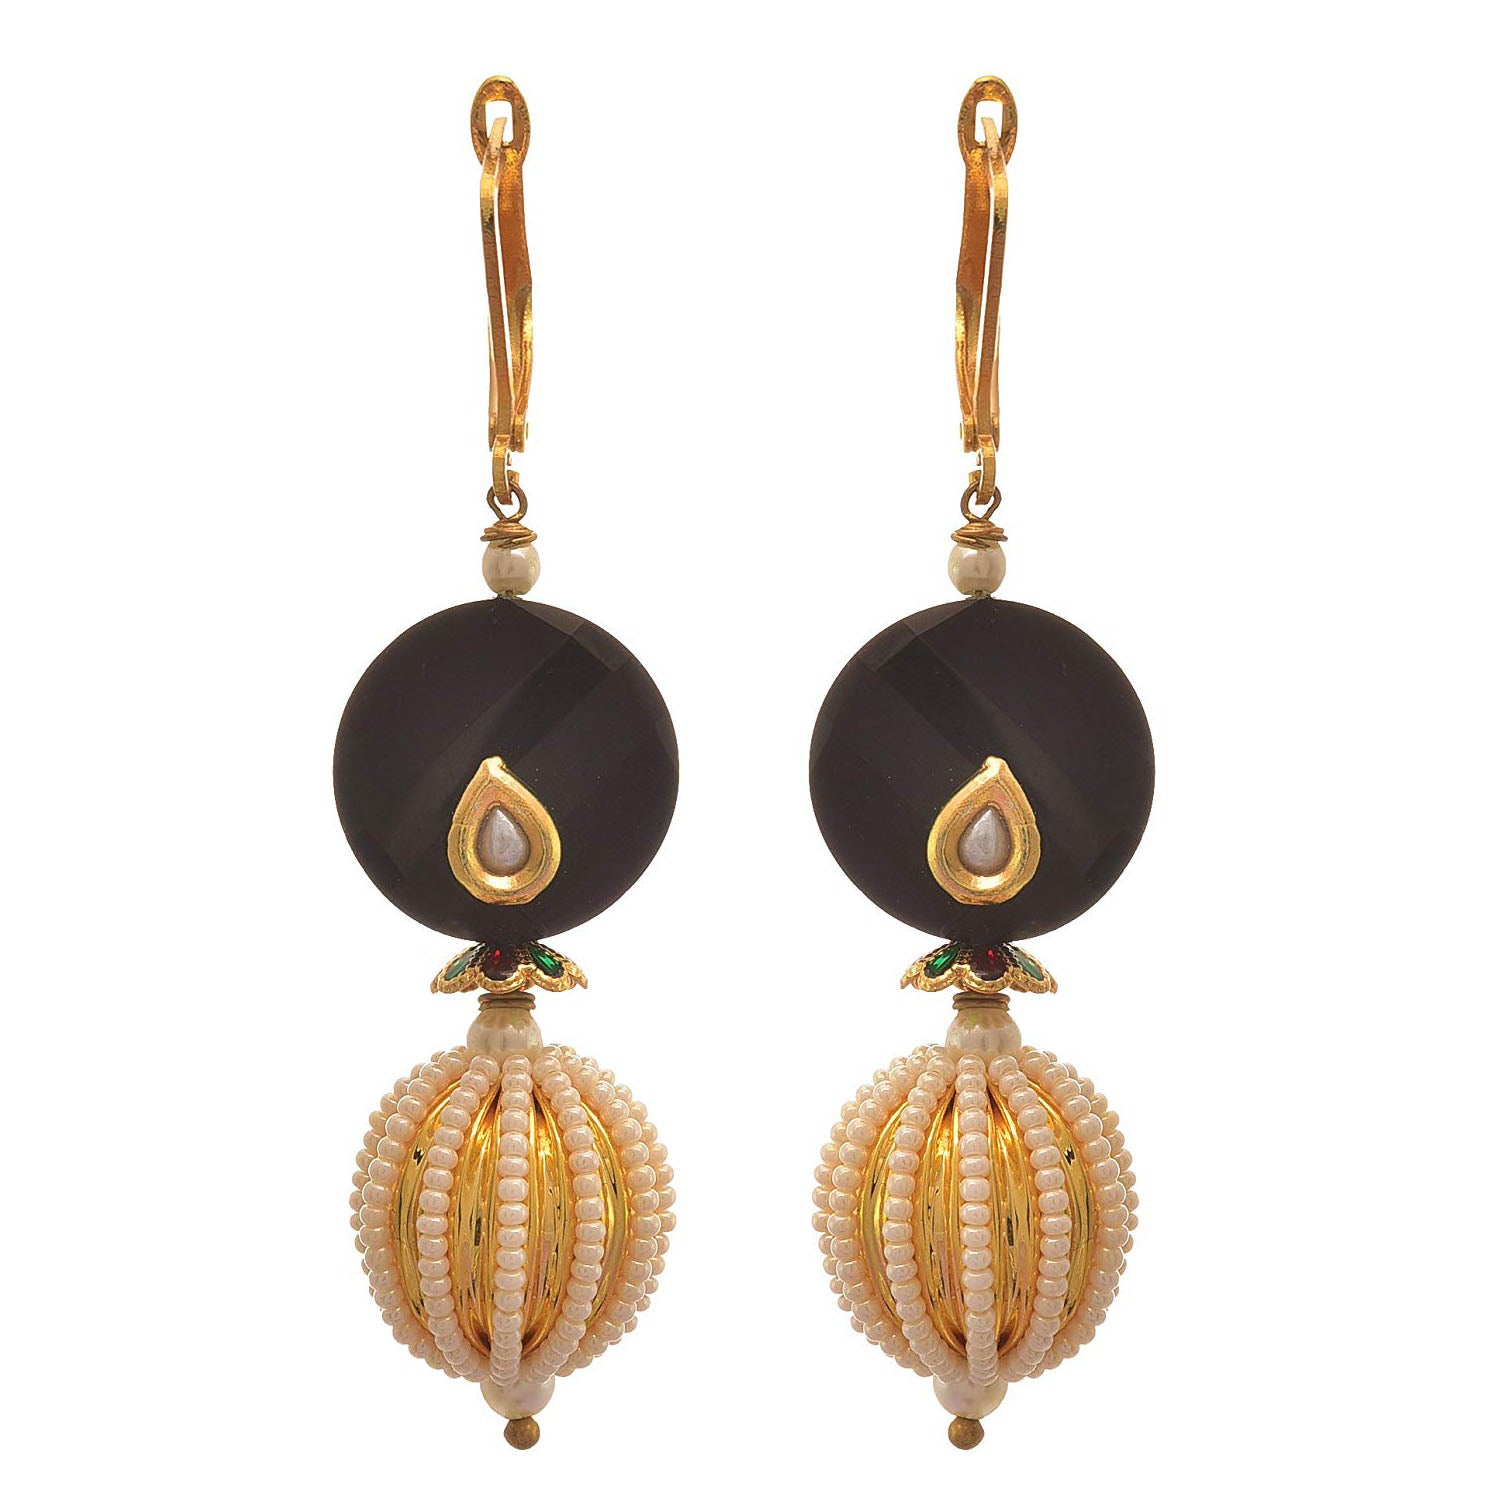 JFL-Traditional Ethnic One Gram Gold Plated Kundan Meenakar Transparent Lemon Yellow Stone Designer Earrings For Women & Girls.